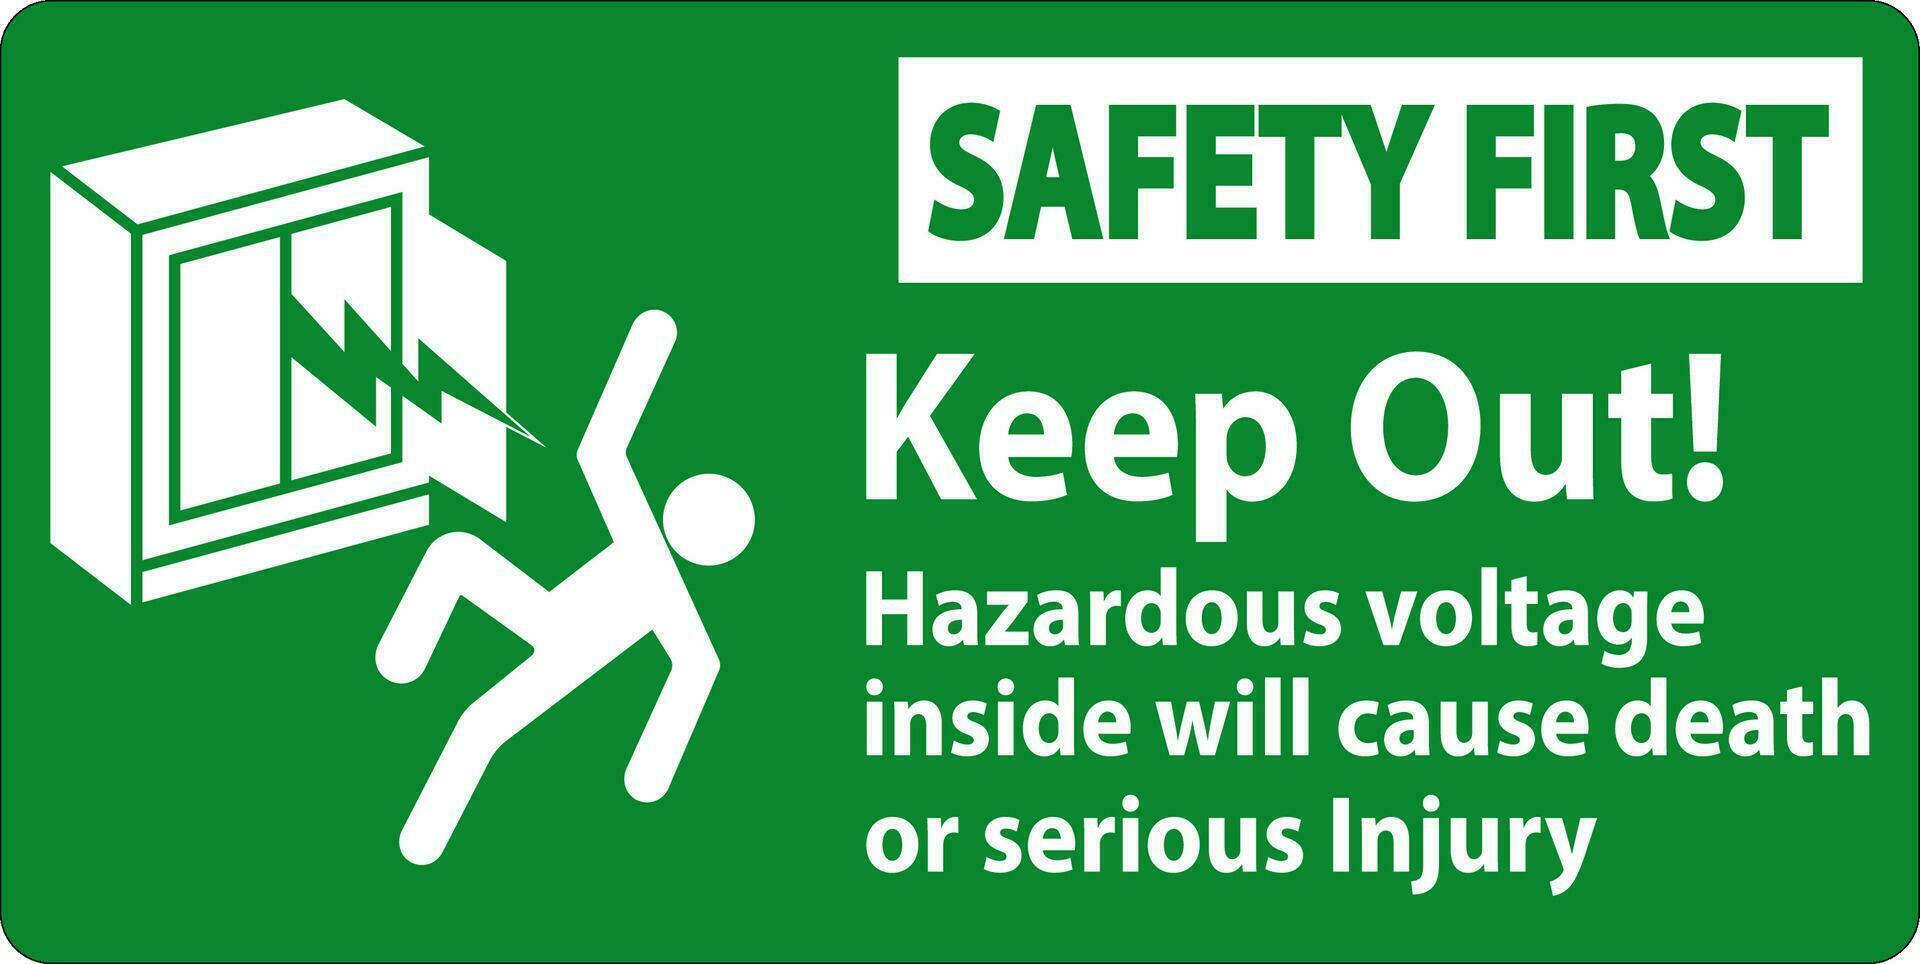 la seguridad primero firmar mantener fuera peligroso voltaje adentro, será porque muerte o grave lesión vector